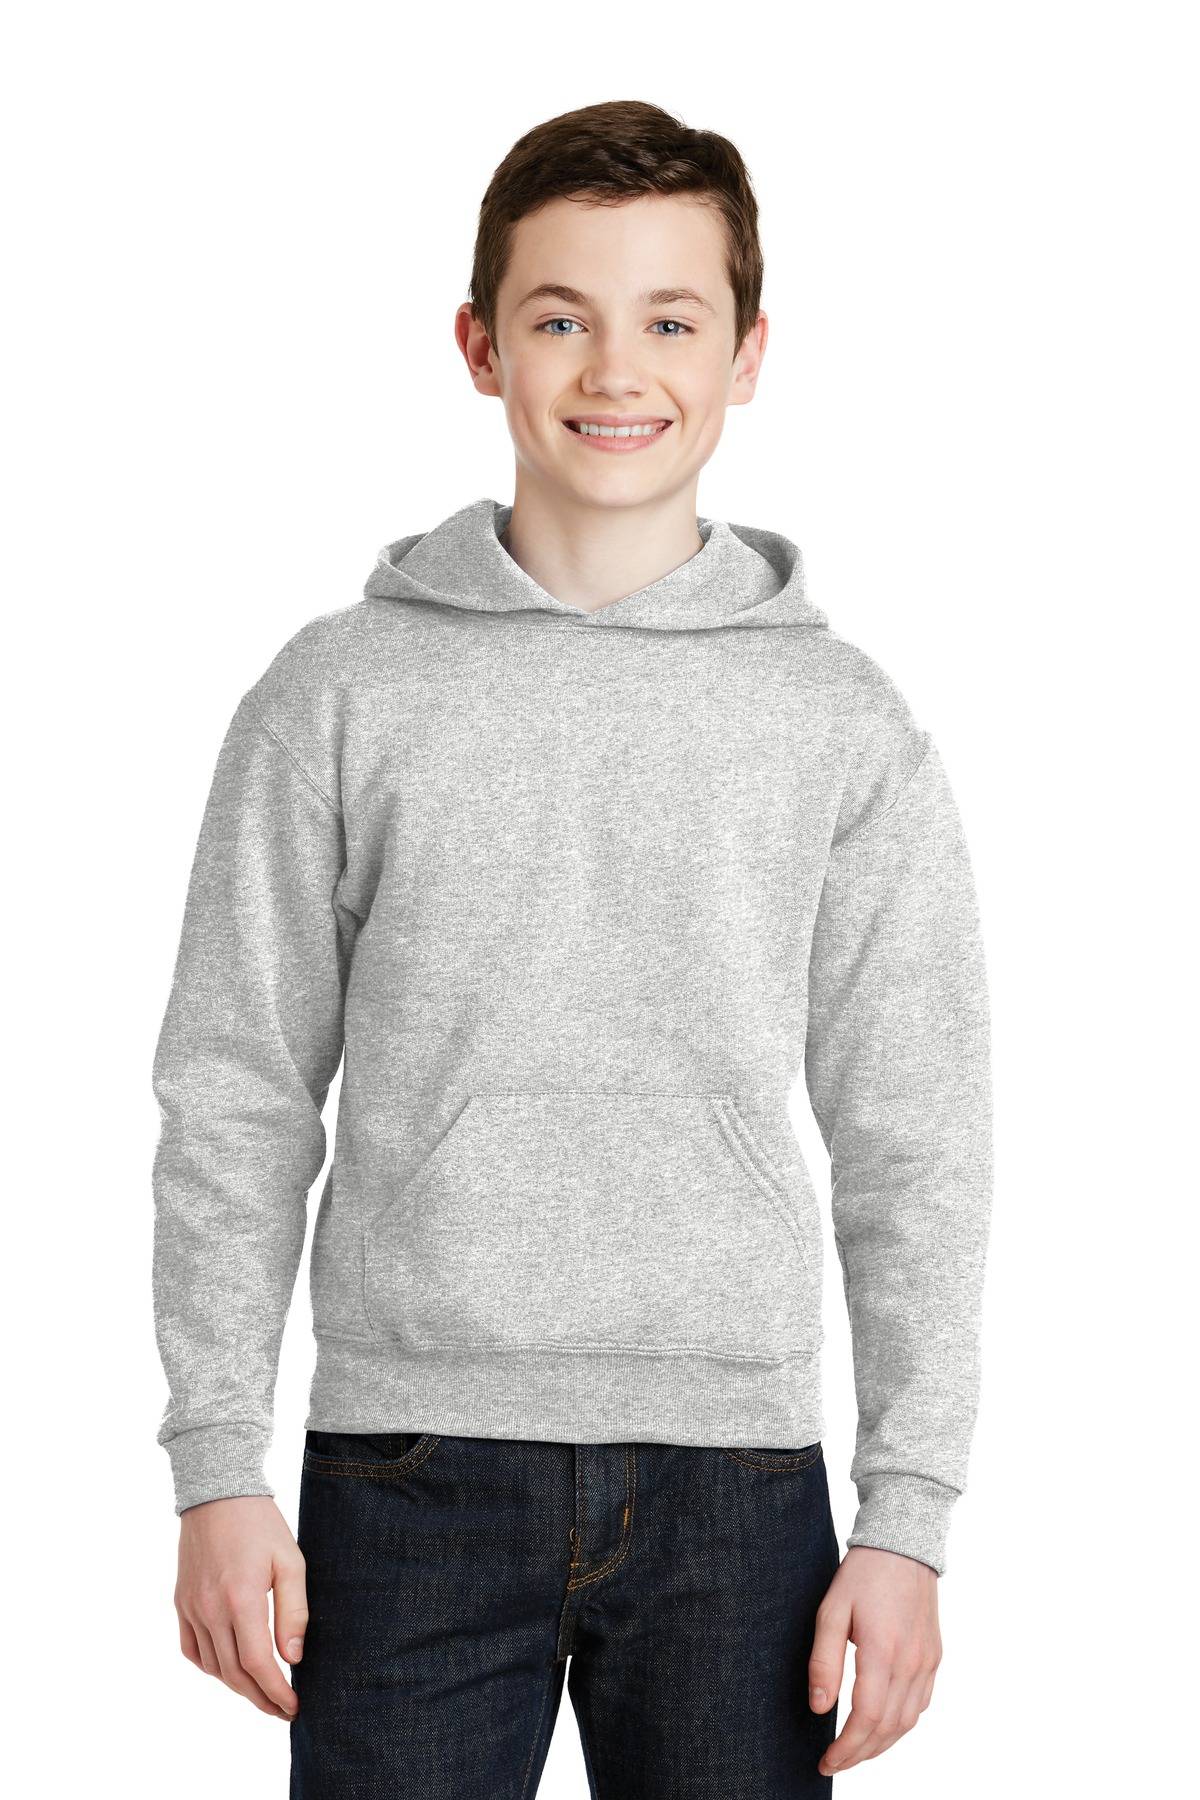 Jerzees 996Y Youth NuBlend Pullover Hooded Sweatshirt in Bulk Price